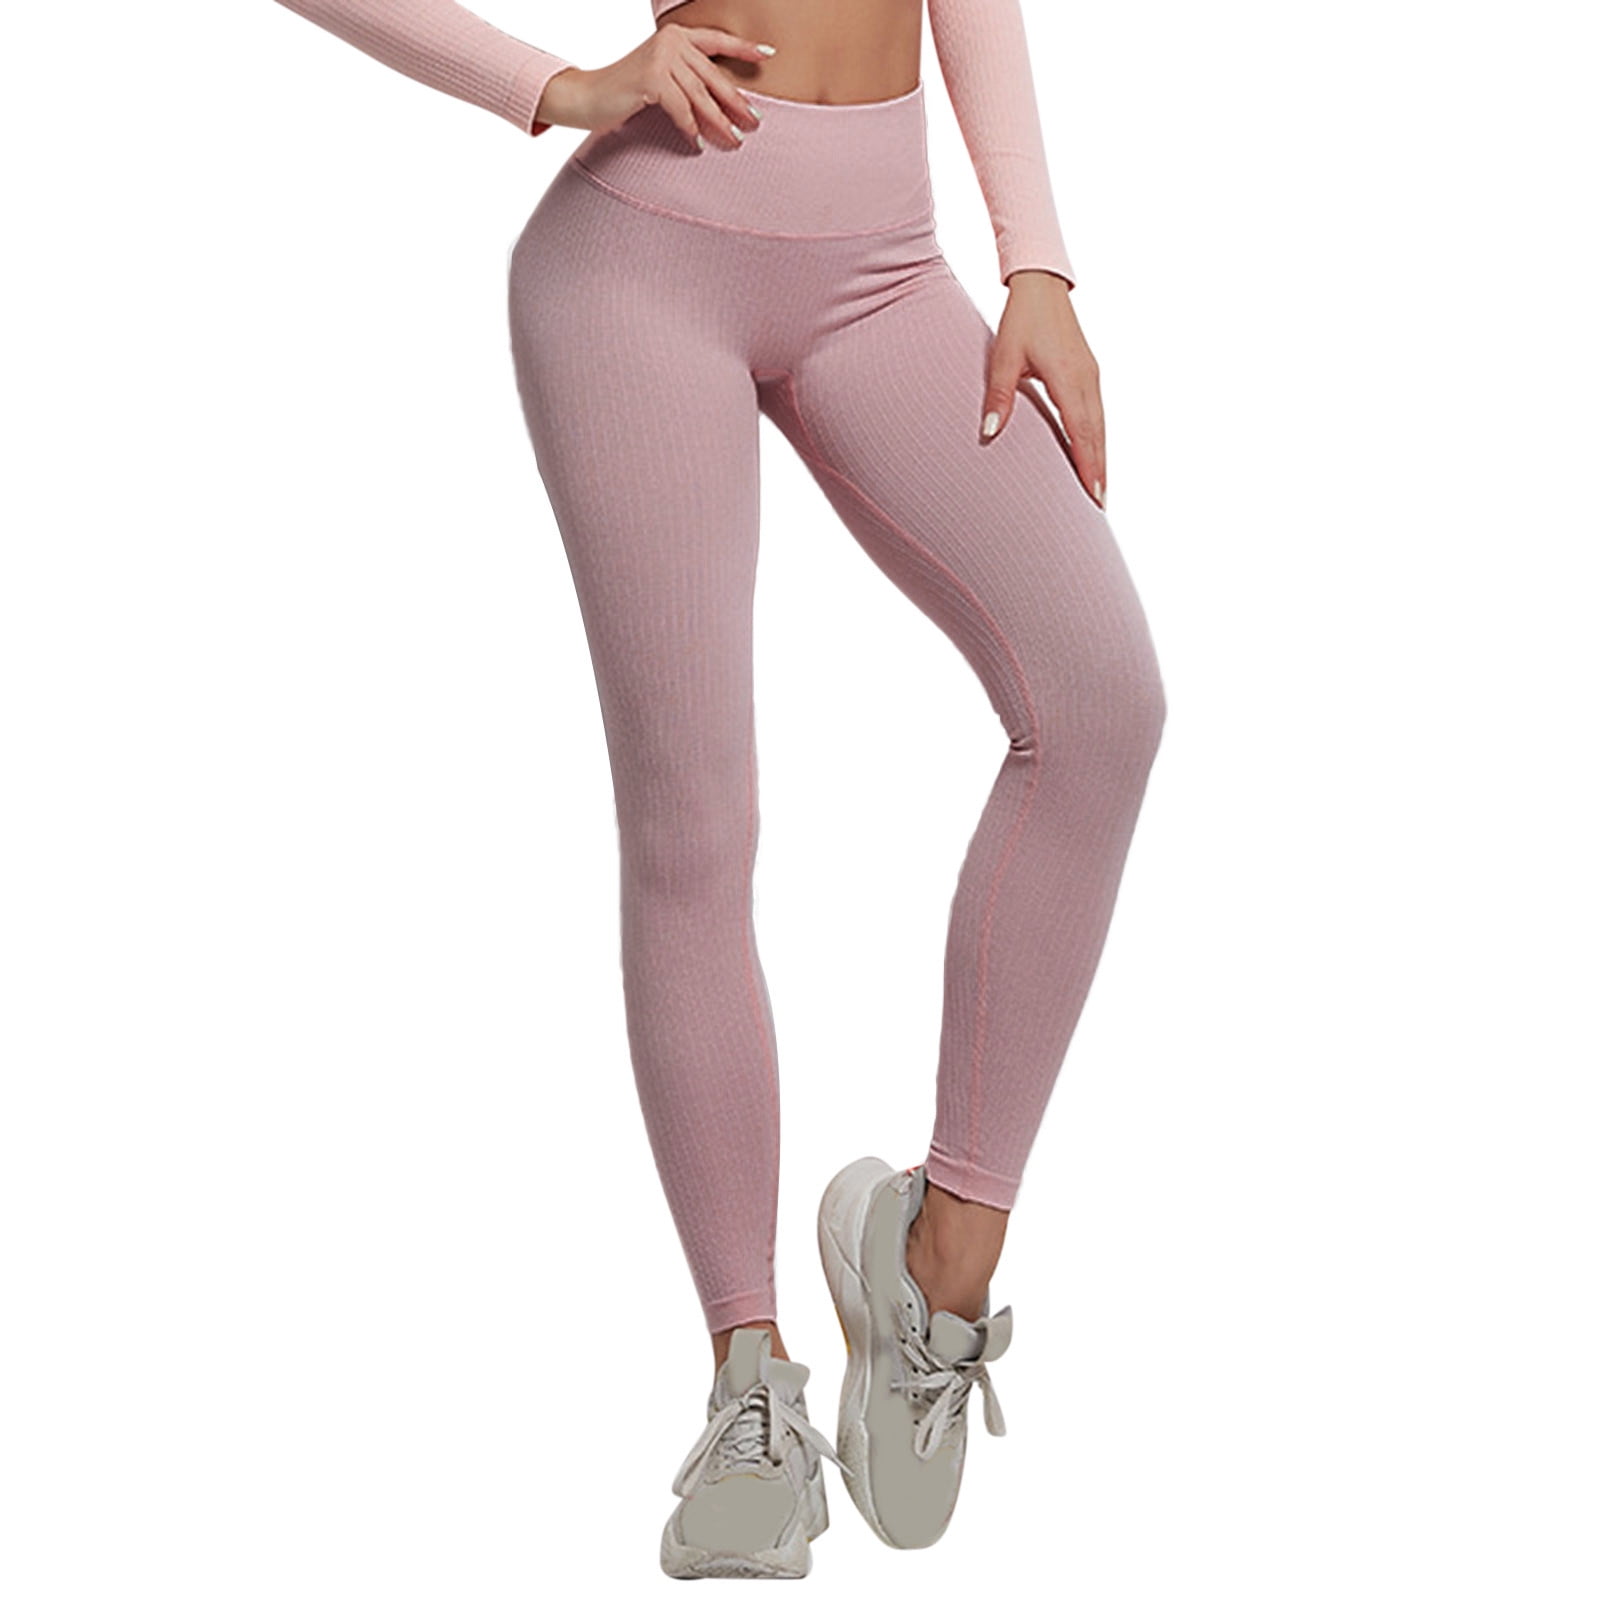 Share 115+ fitness leggings damen latest